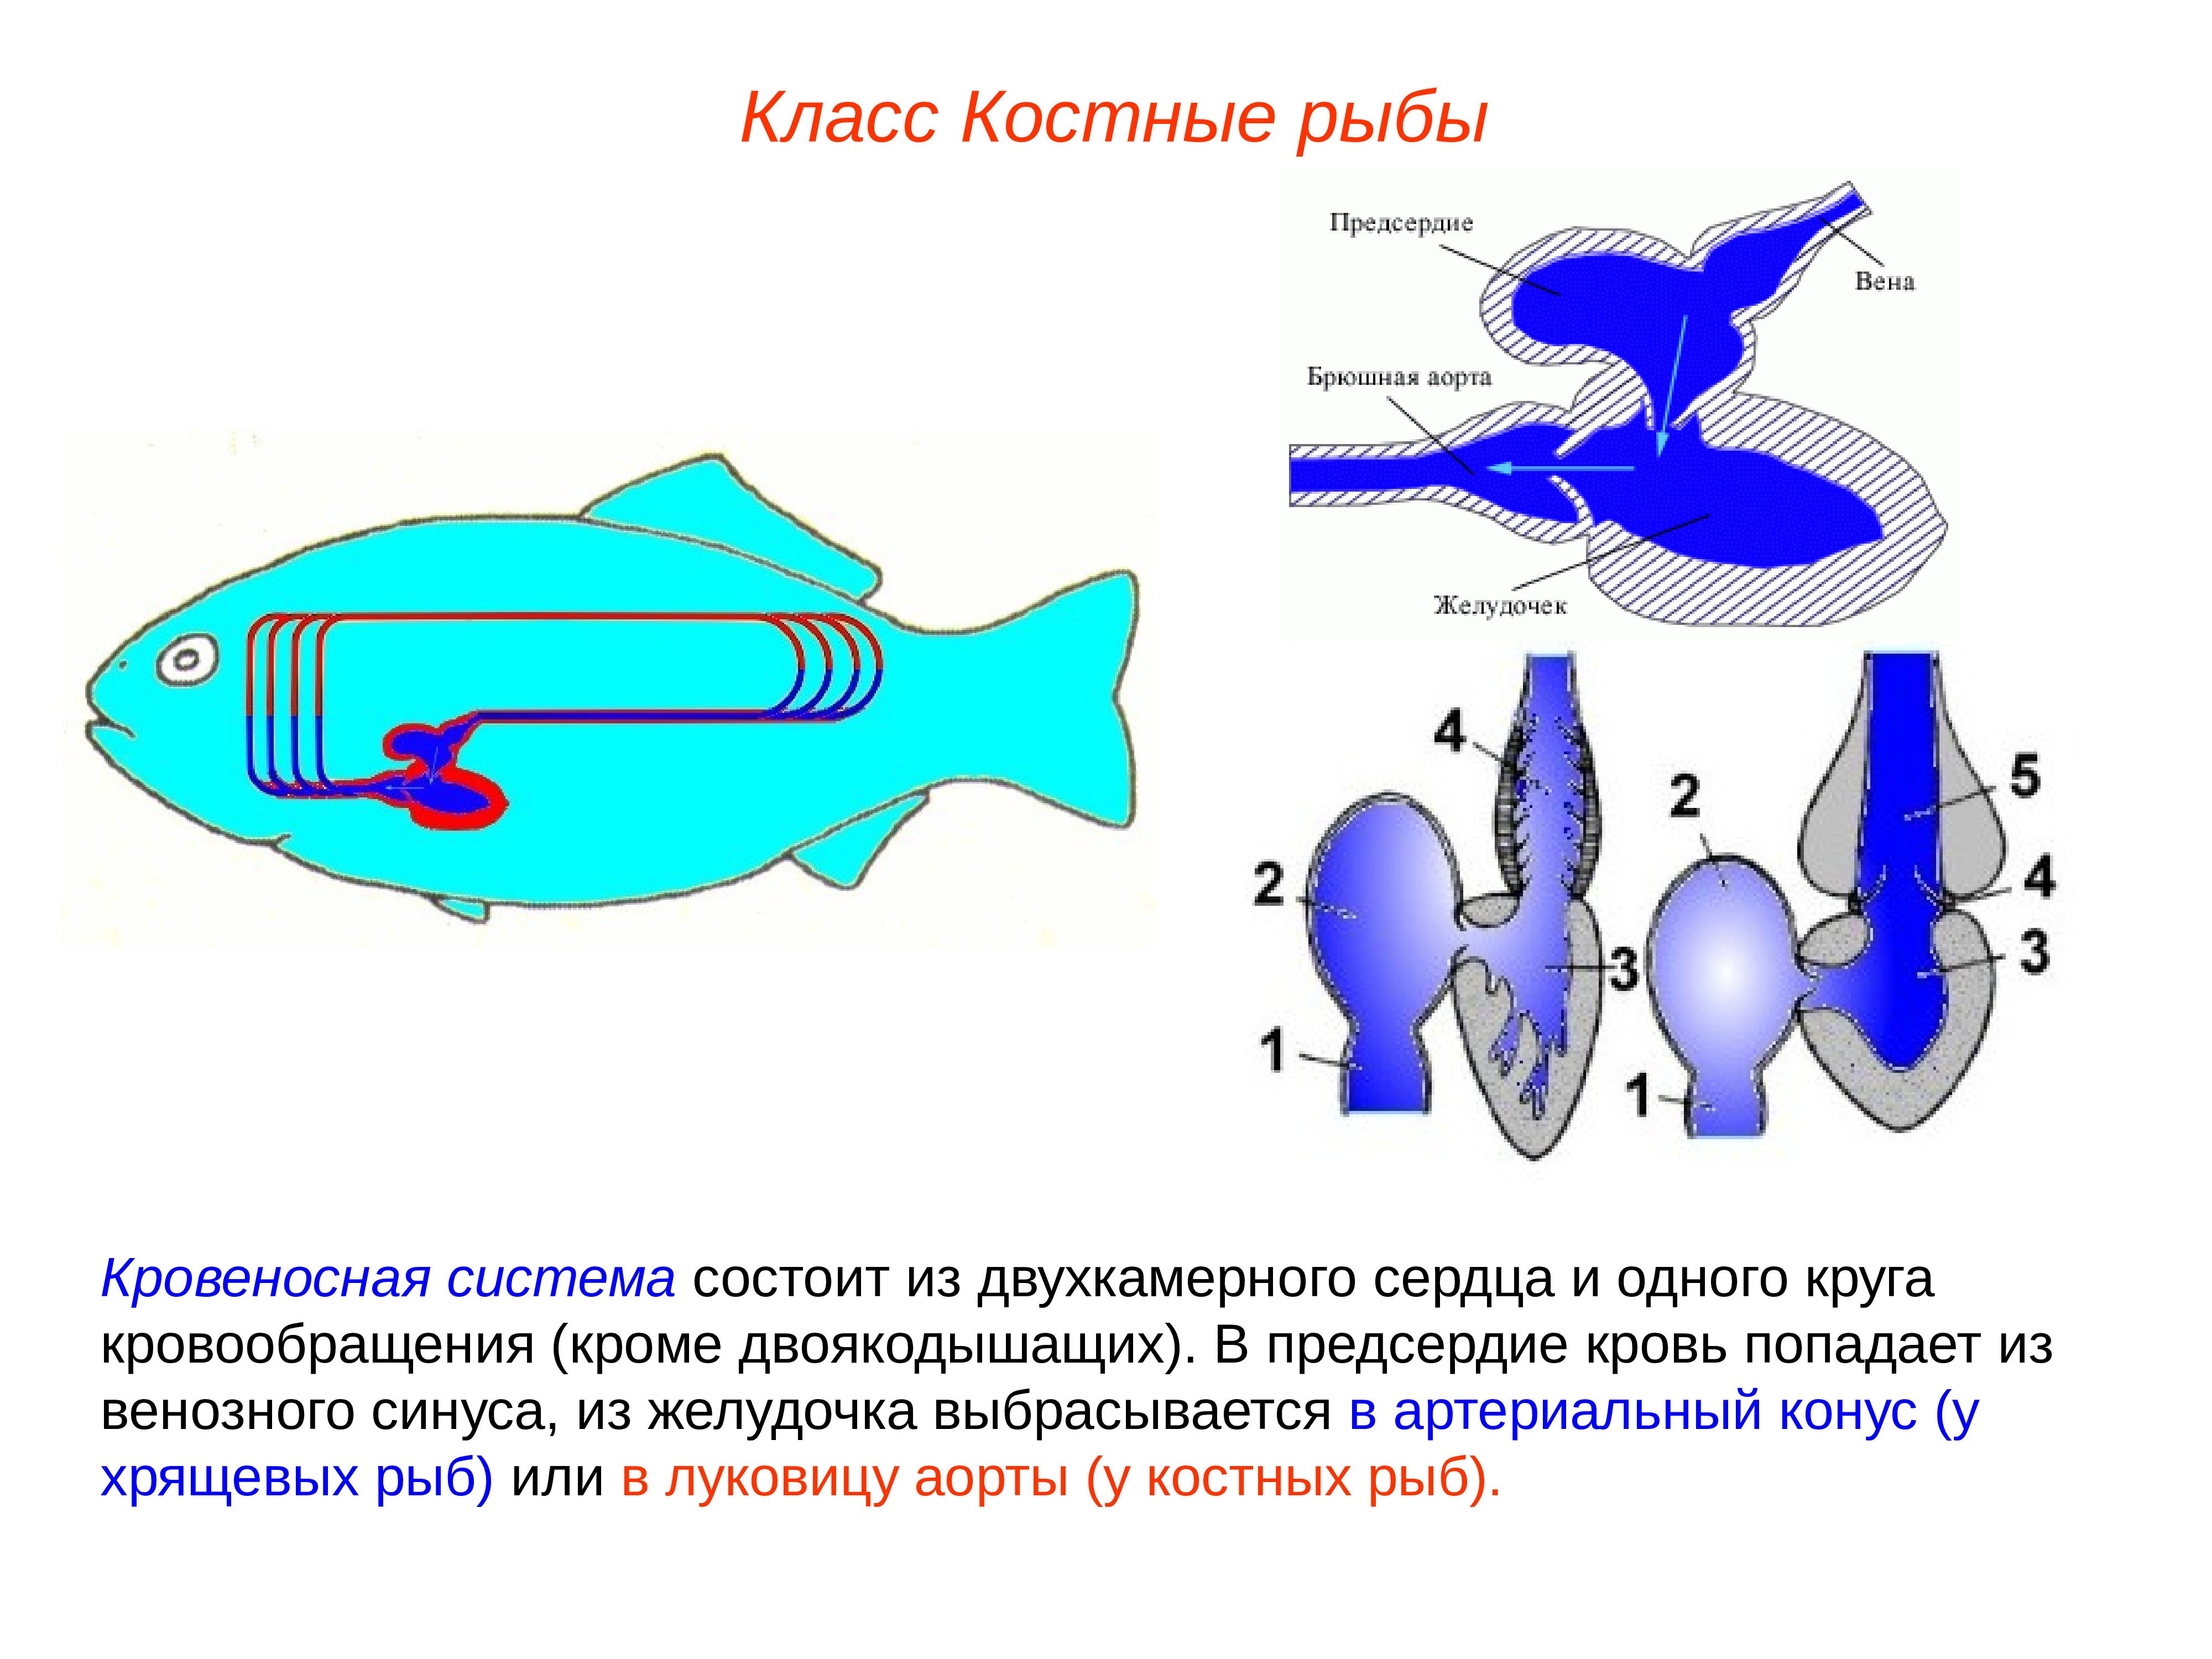 Особенности кровообращения рыб. Система кровообращения костистых рыб. Схема кровеносной системы костистой рыбы. Строение сердца костных рыб. Строение сердца хрящевых рыб.